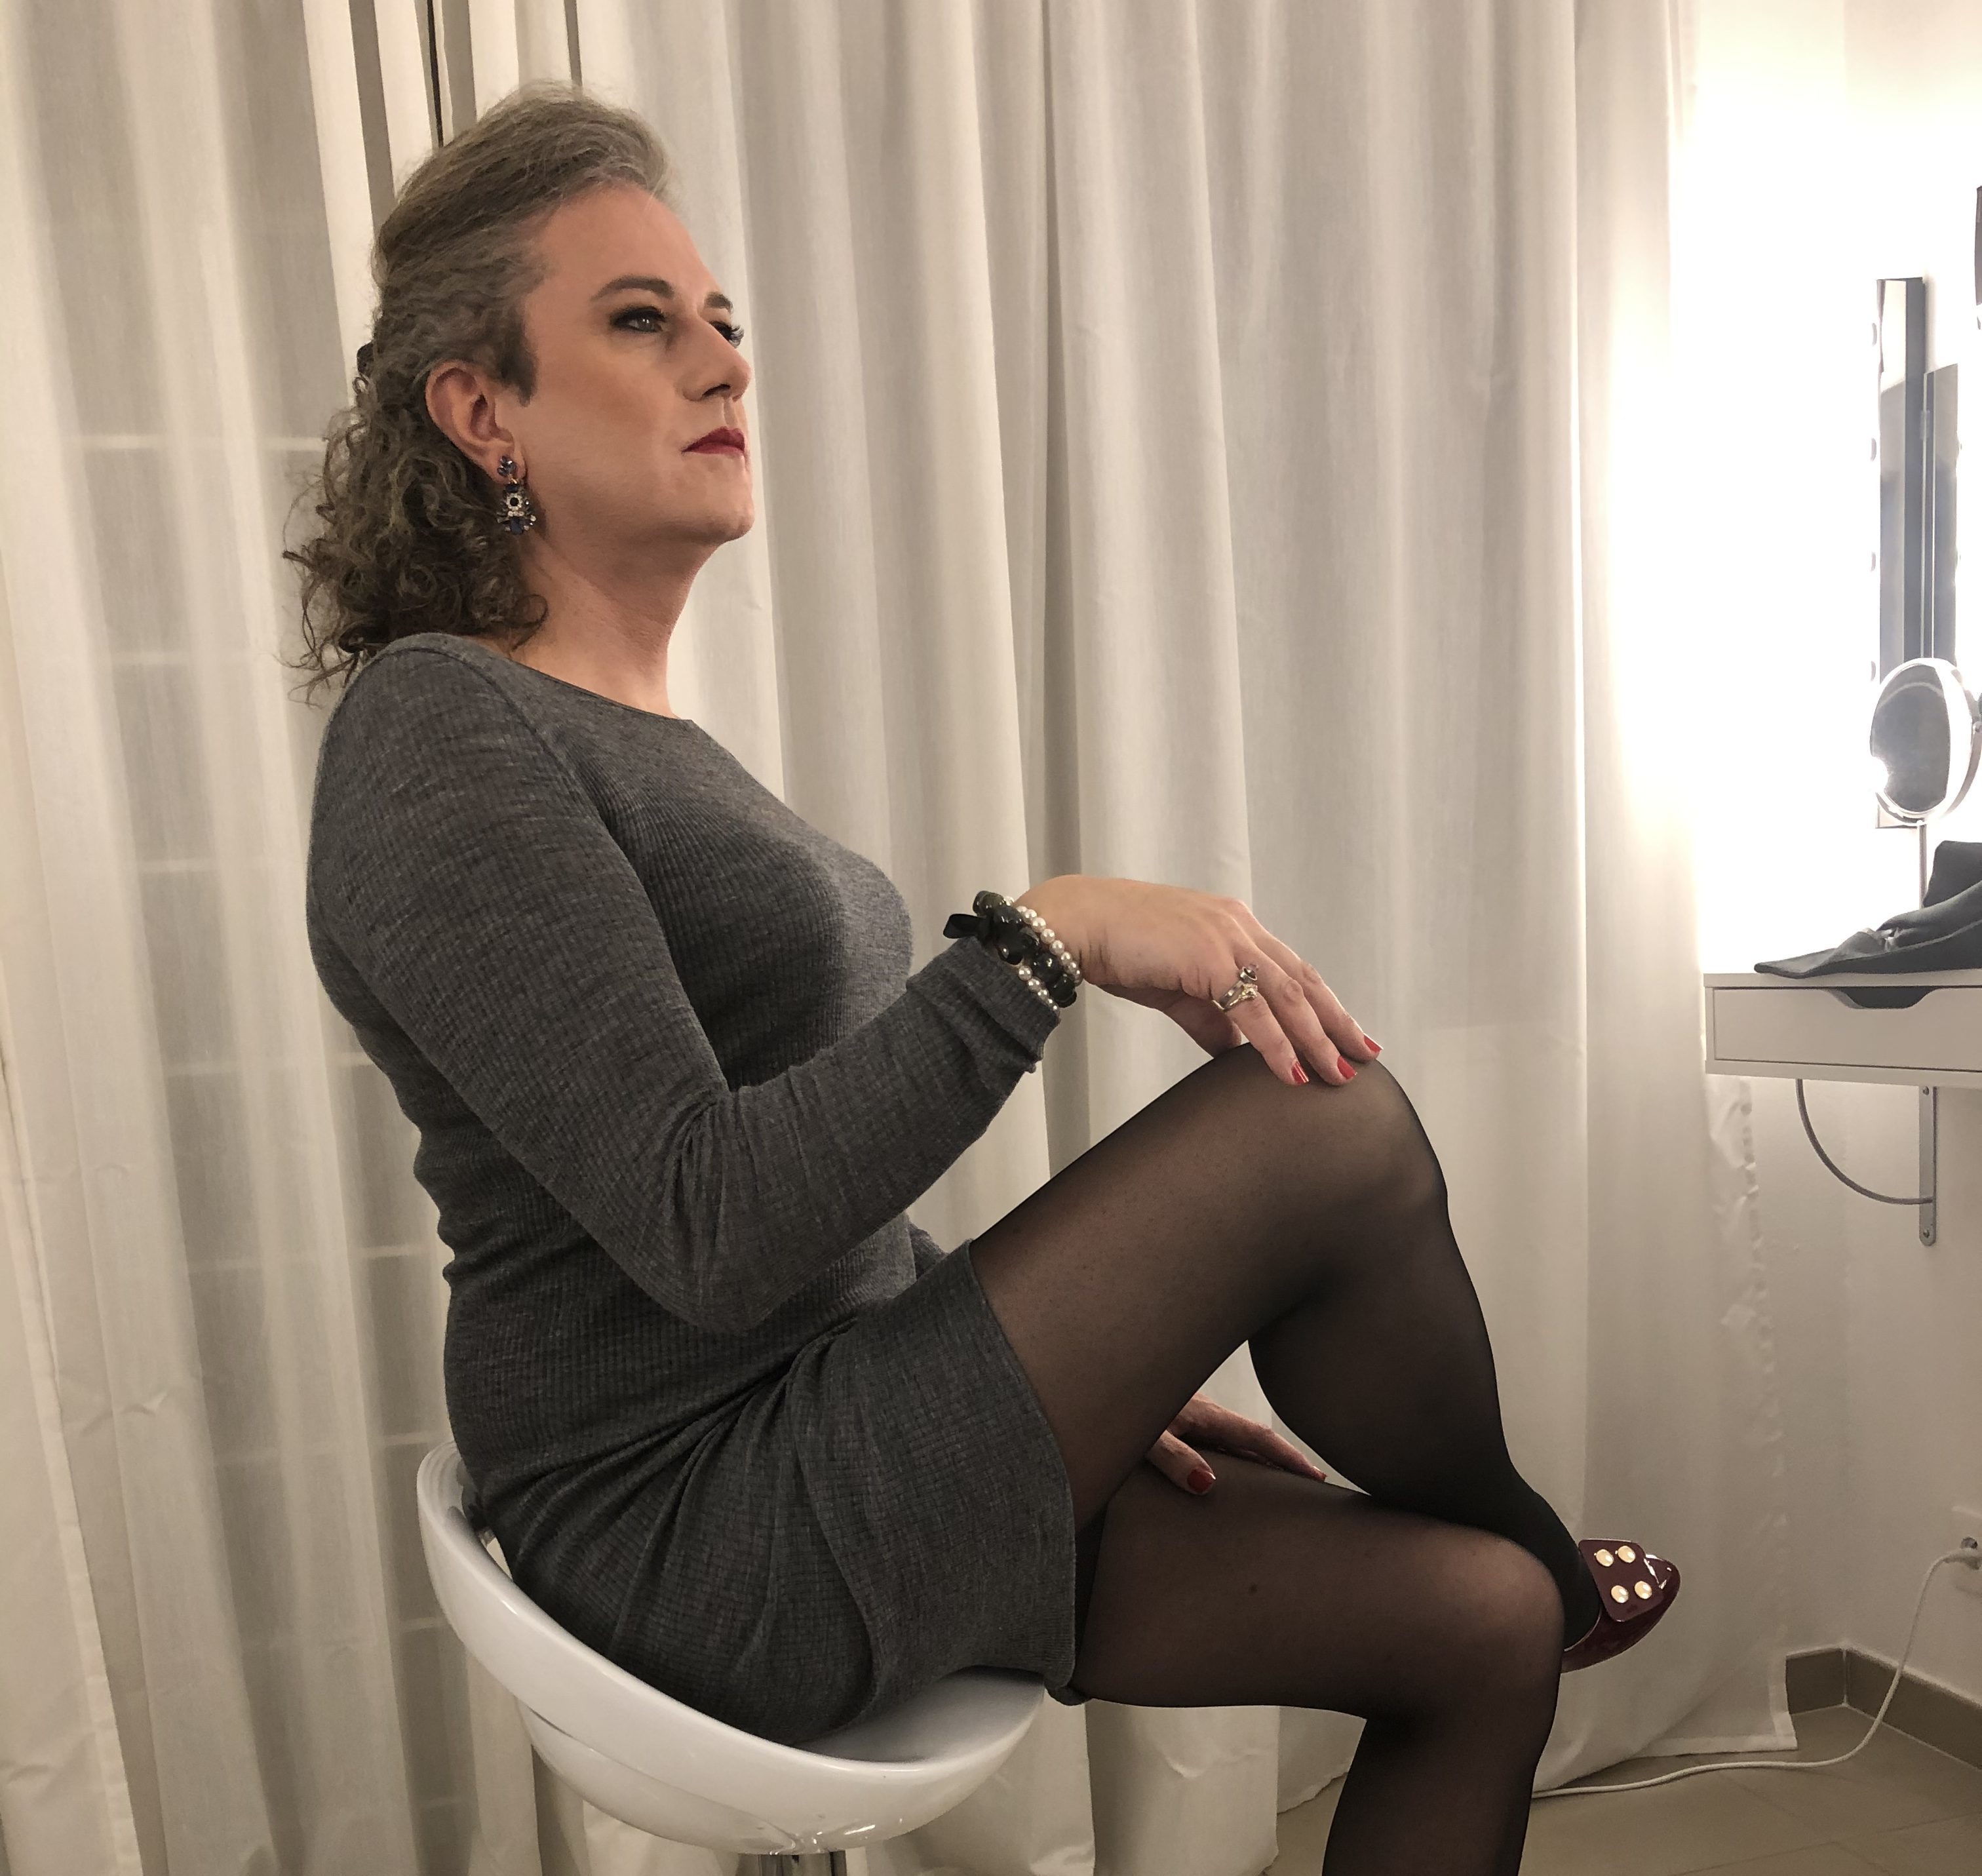 Travesti transgenre maquillée  par Jennifer dans son atelier